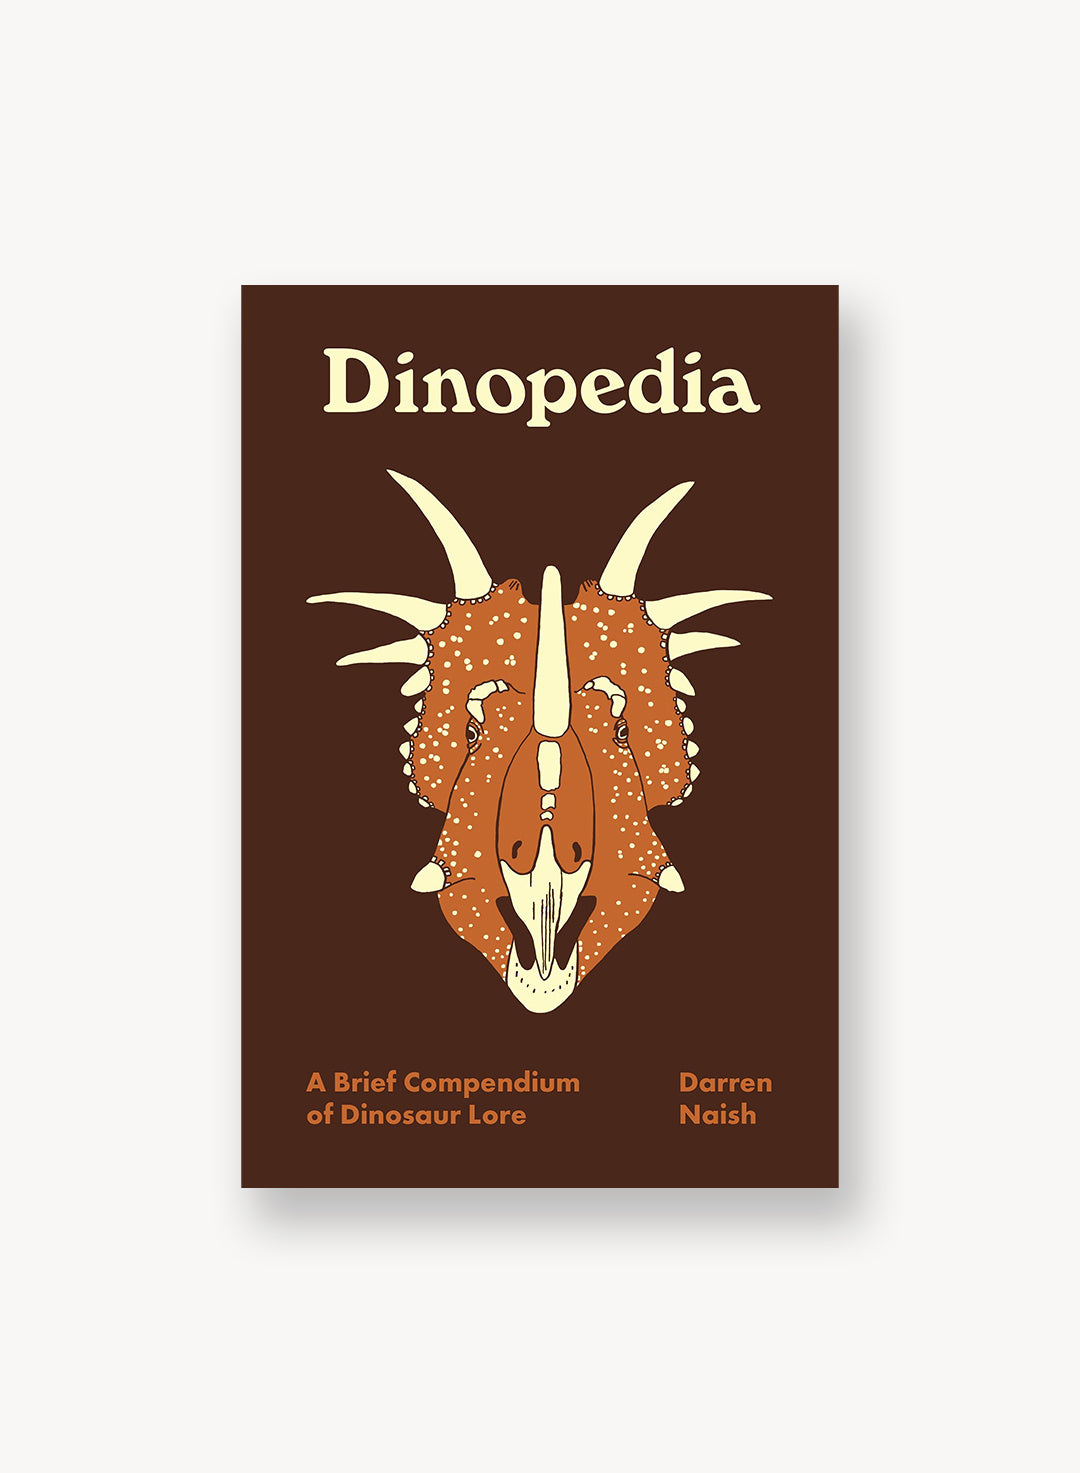 Dinopedia: A Brief Compendium of Dinosaur Lore